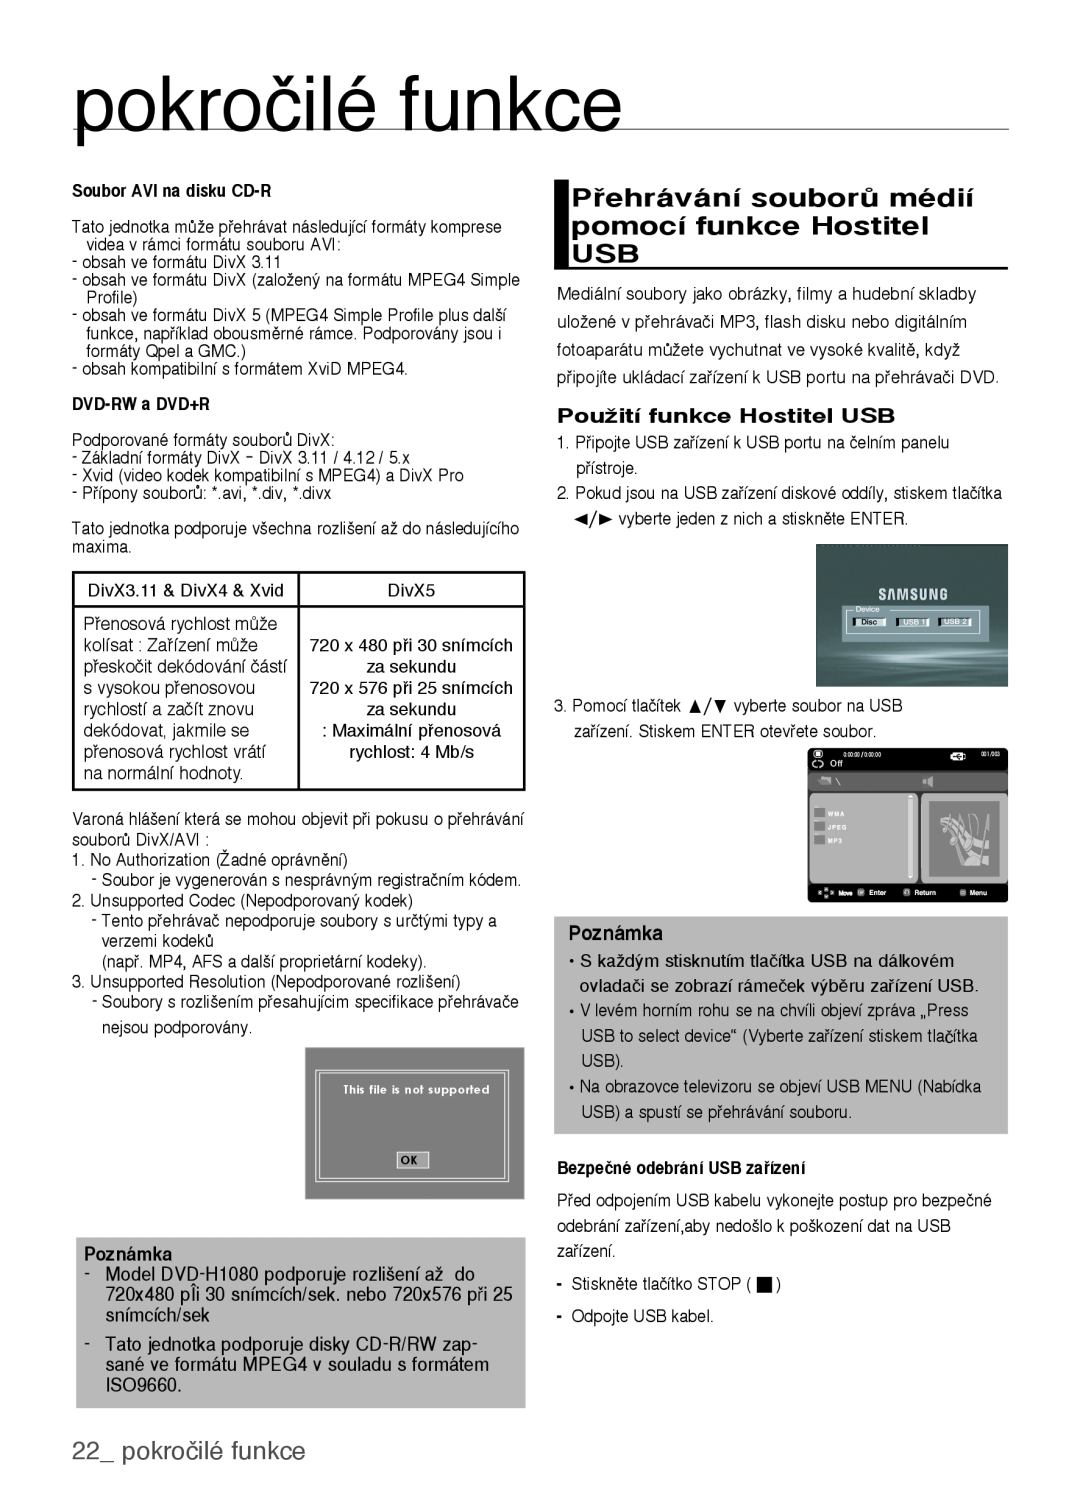 Samsung DVD-H1080W/XEE Pehrávání souborÛ médií pomocí funkce Hostitel USB, pokročilé funkce, PouÏití funkce Hostitel USB 